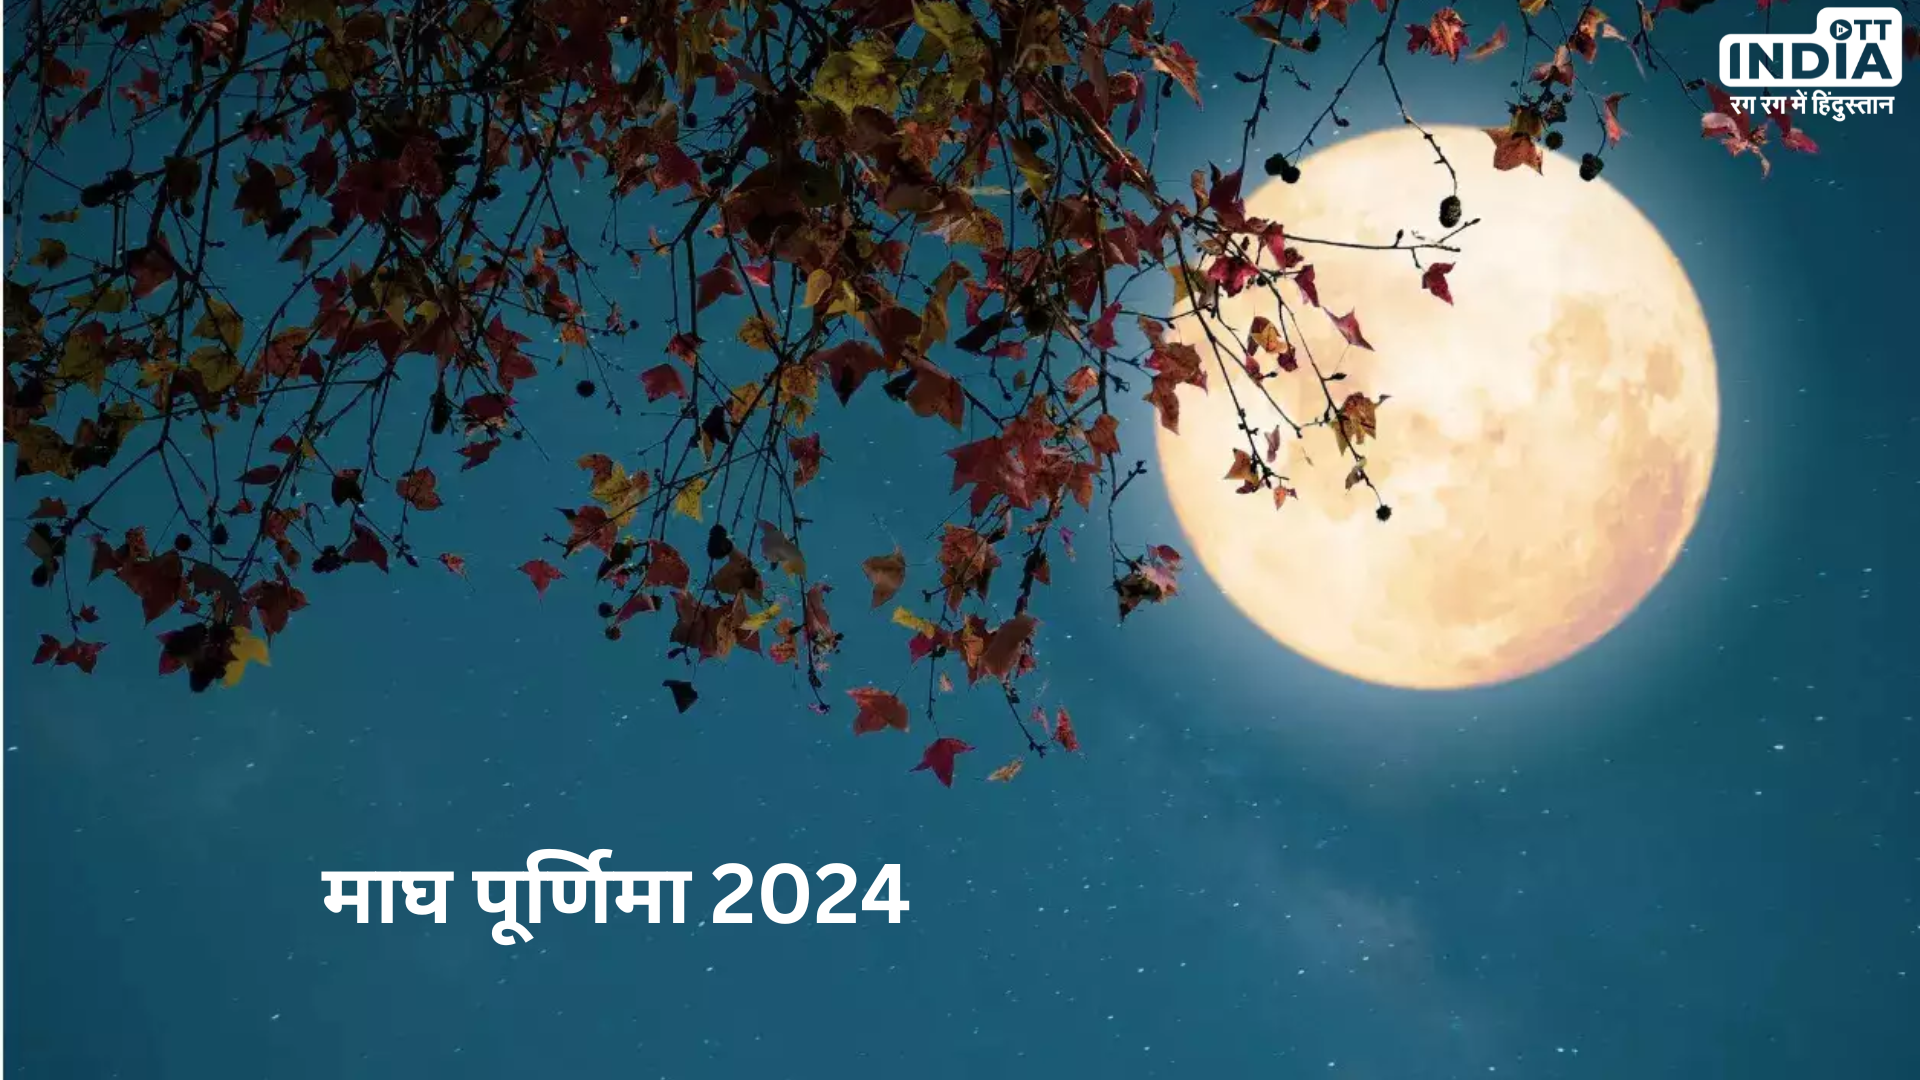 Magh Purnima 2024: माघ पूर्णिमा के दिन इस विधि से करें पूजा और पढ़ें ये व्रत कथा, दूर होंगे सभी कष्ट